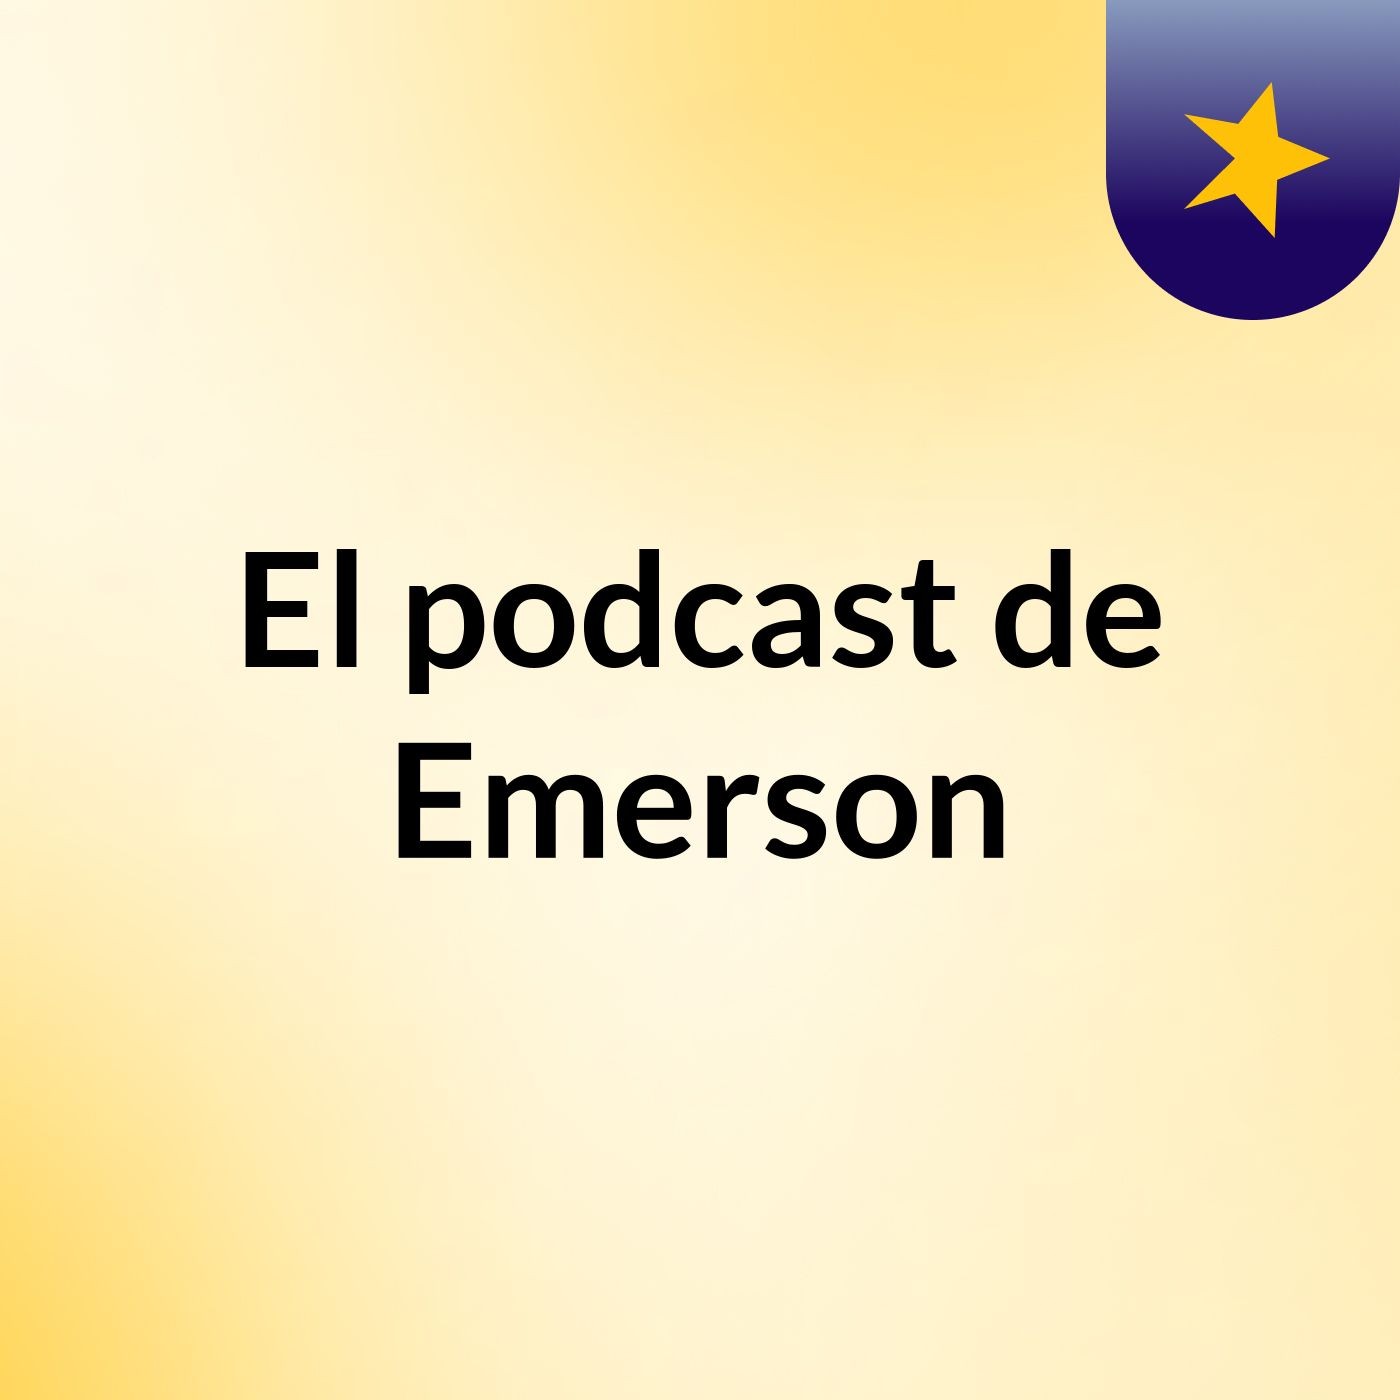 El podcast de Emerson